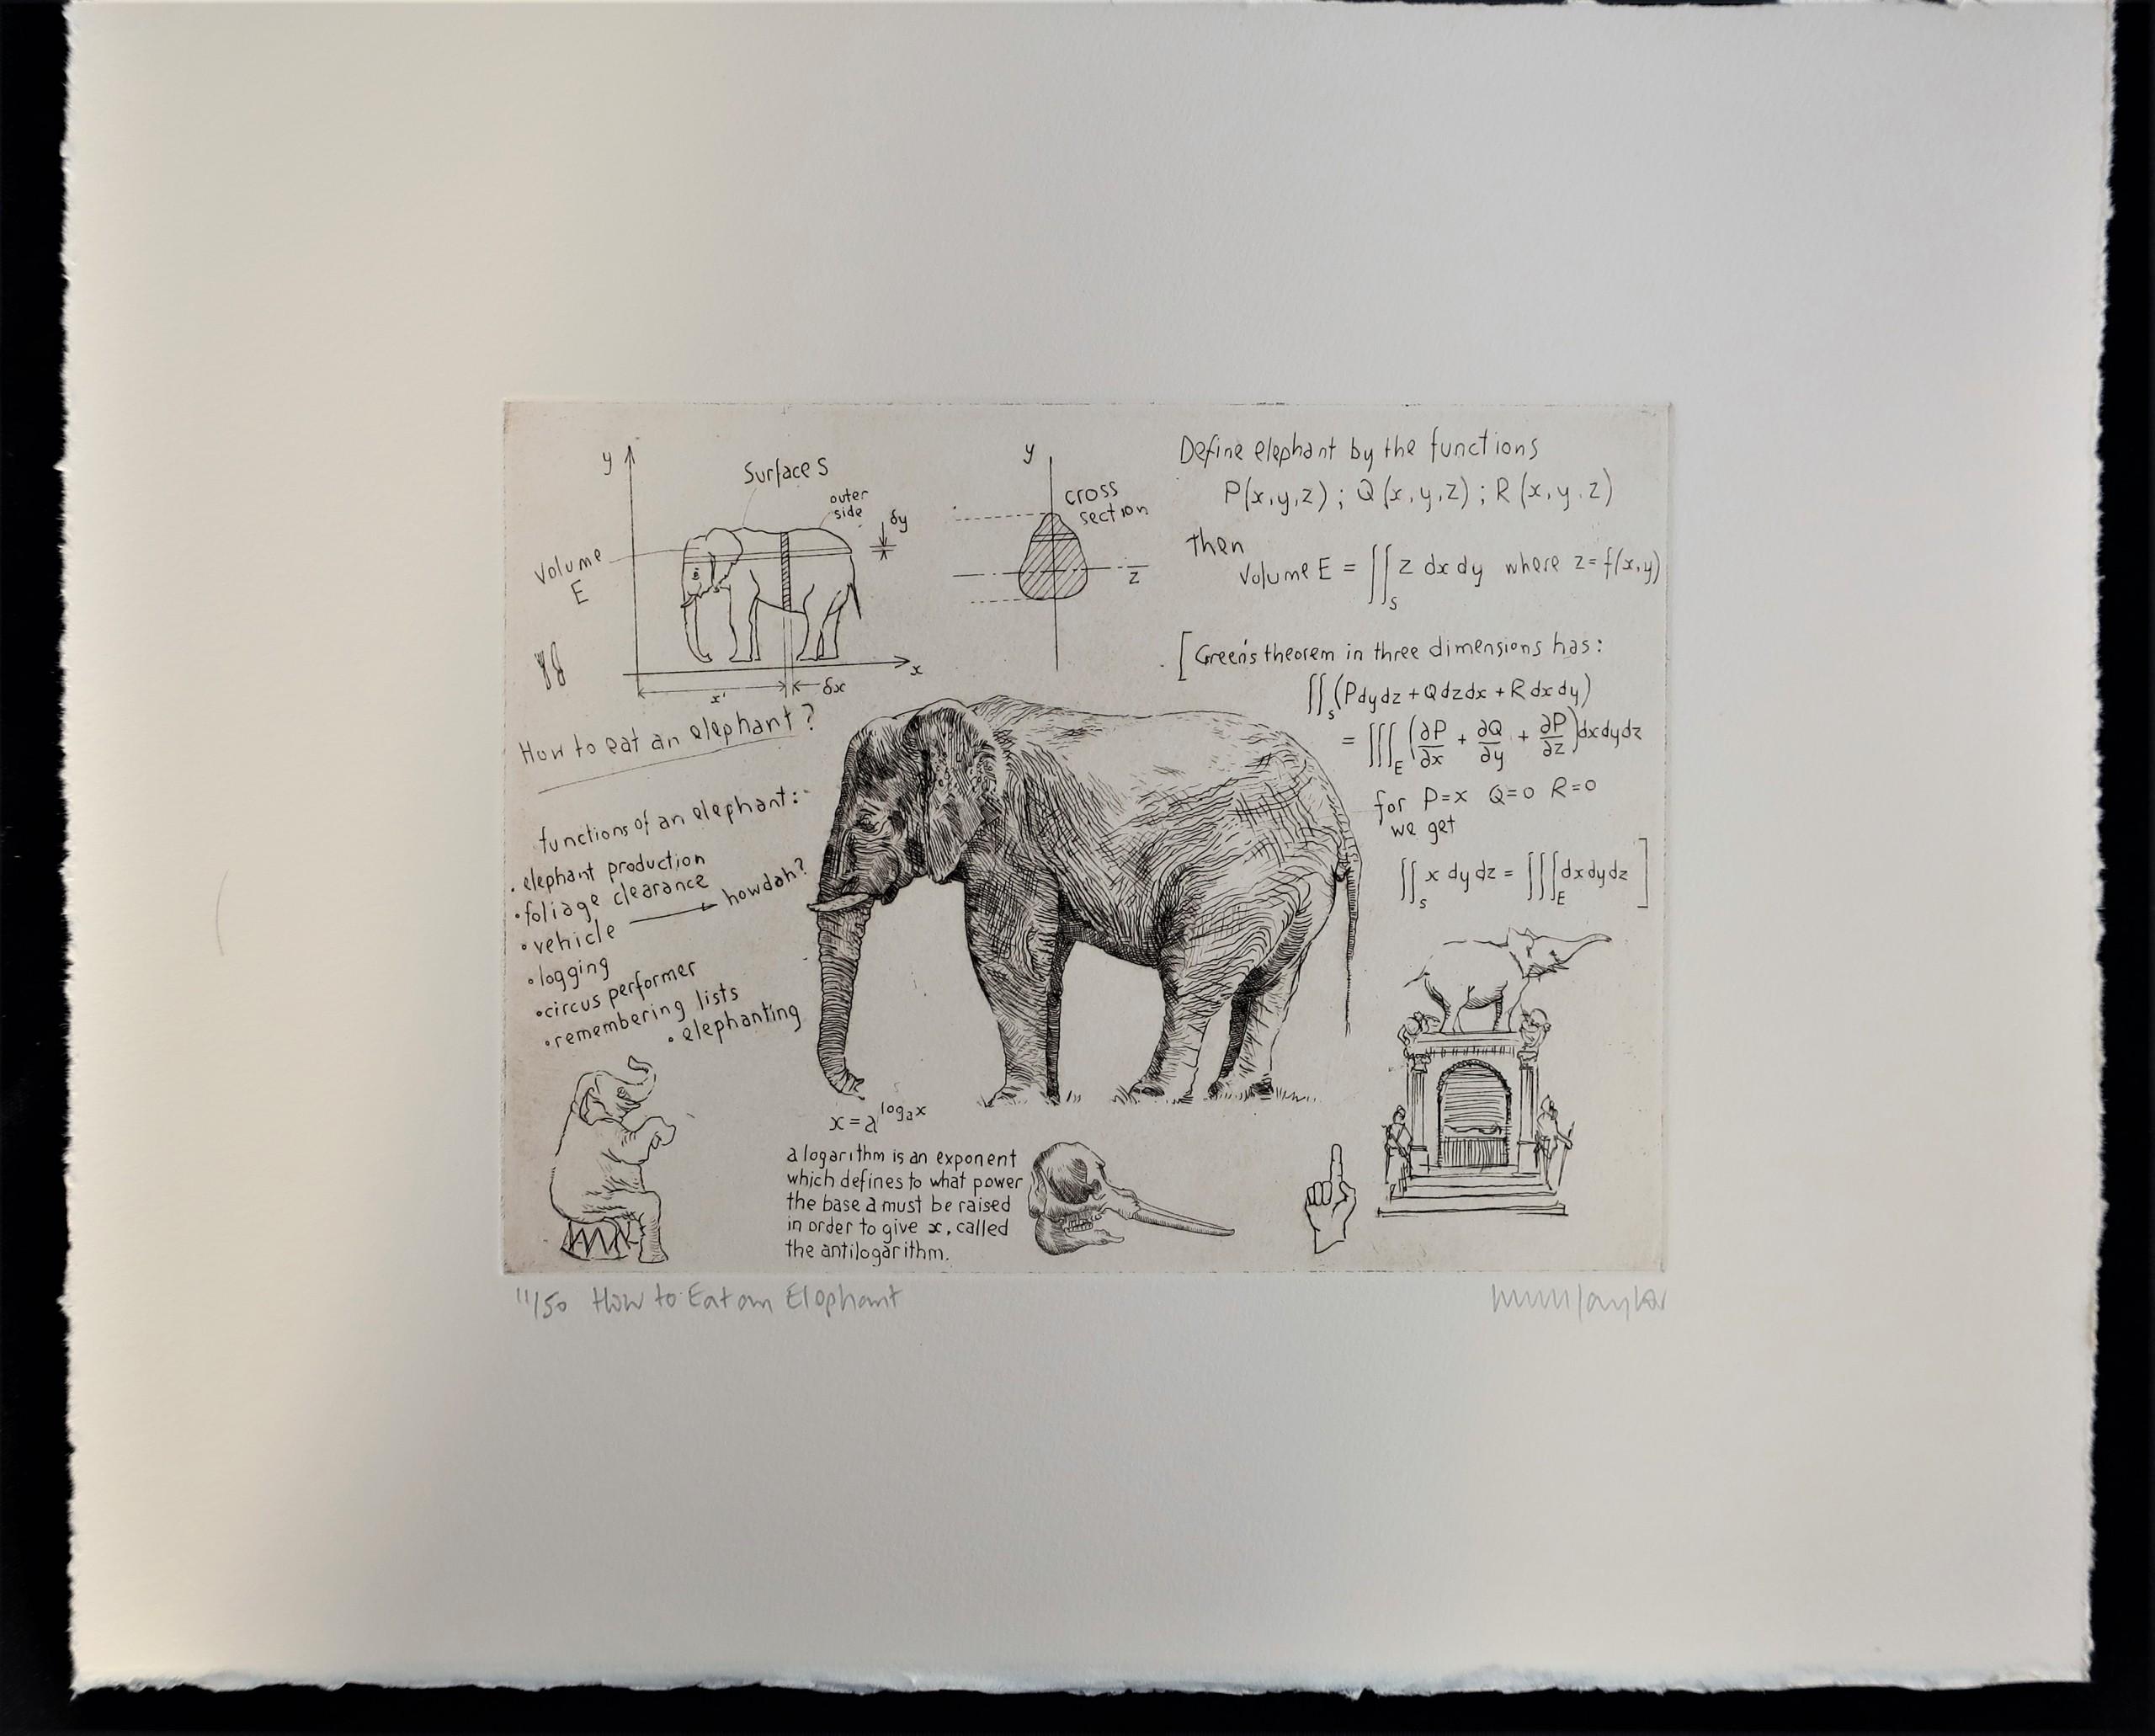 How to Eat an Elephant, gravure sur cuivre, imprimé animal - Print de Will Taylor